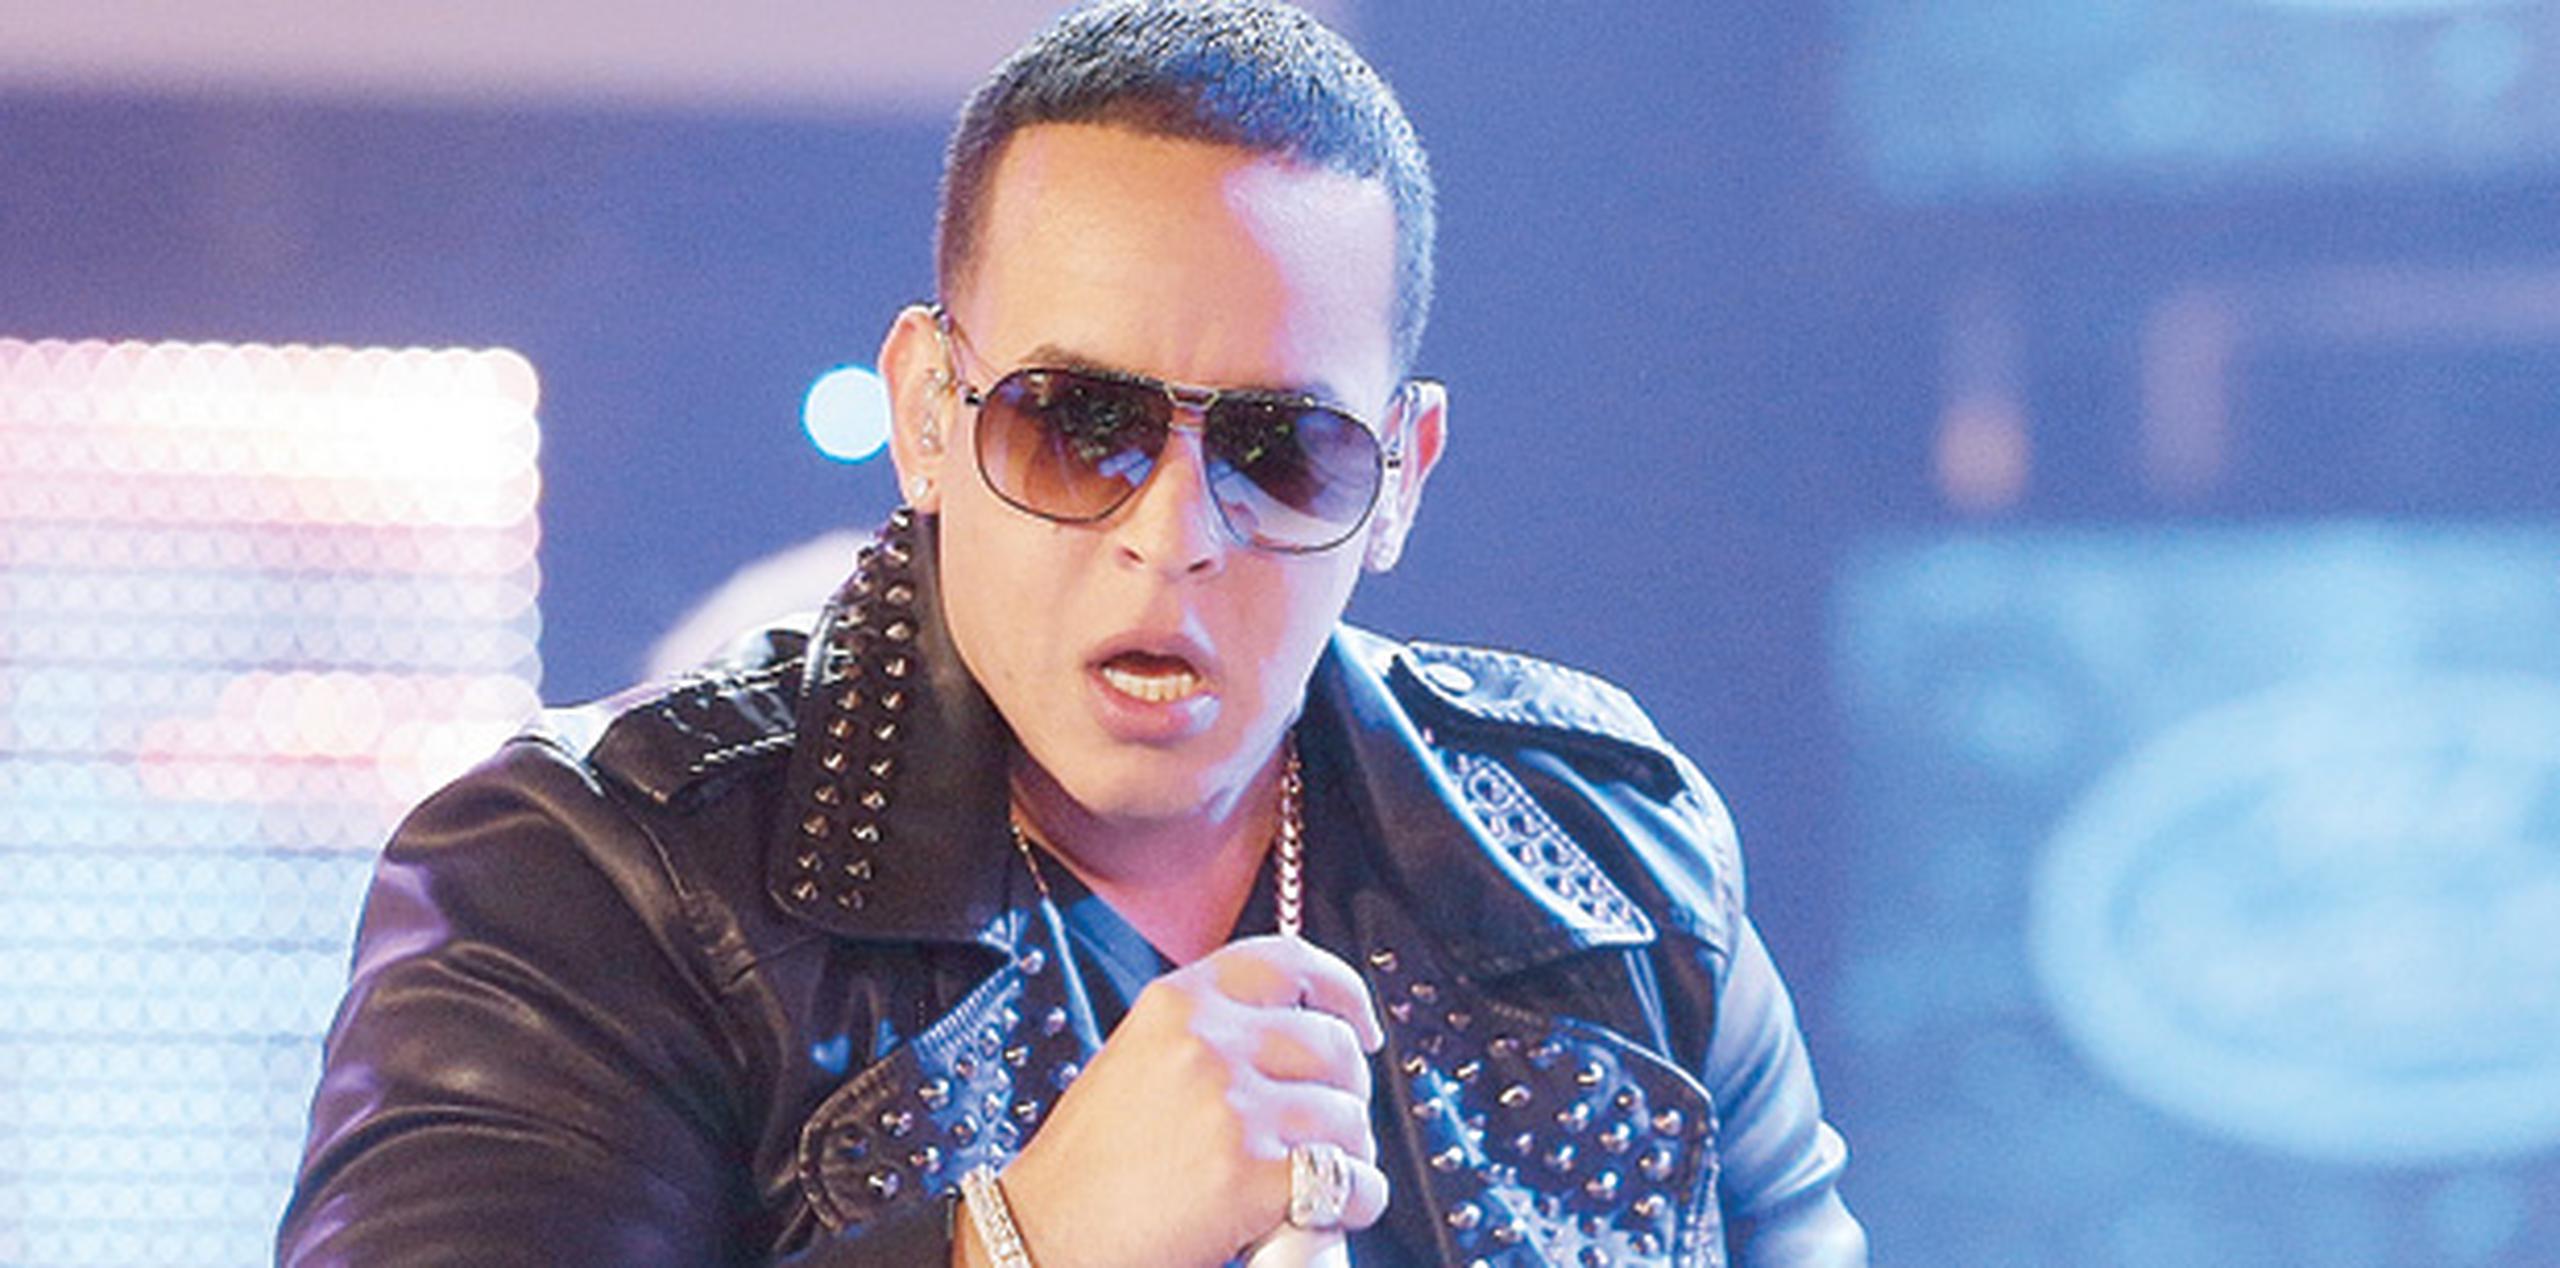 A un día de aparecer el nombre de Daddy Yankee entre los implicados de un presunto esquema de fraude discal, surge una versión “under” de su más grande éxito “La gasolina” con el título “La clandestina”.